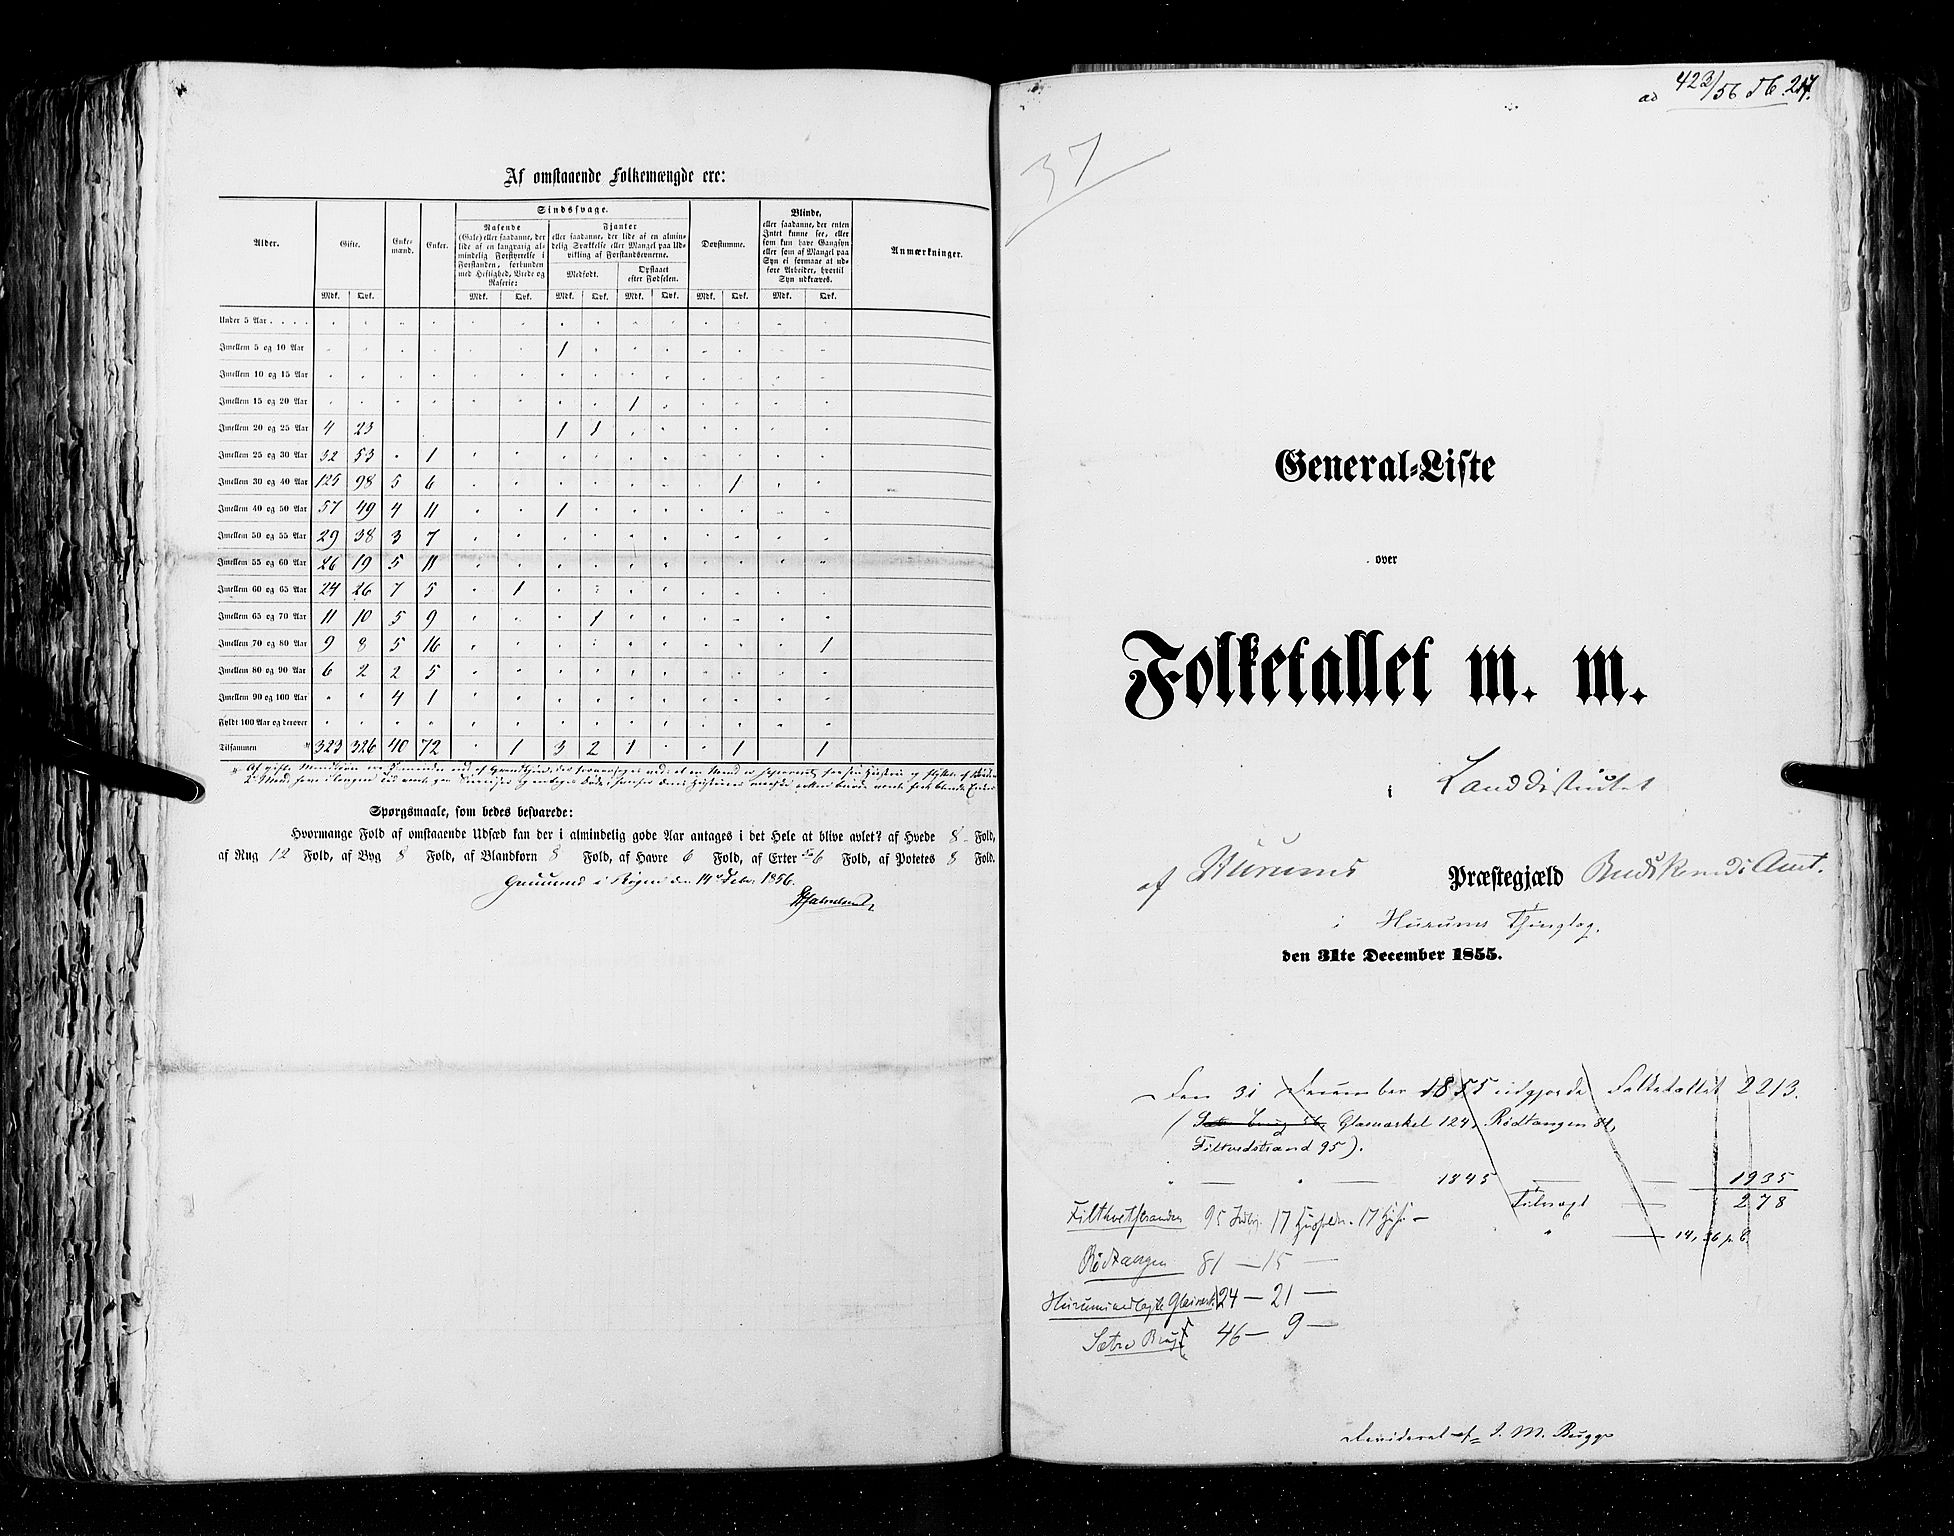 RA, Census 1855, vol. 2: Kristians amt, Buskerud amt og Jarlsberg og Larvik amt, 1855, p. 217